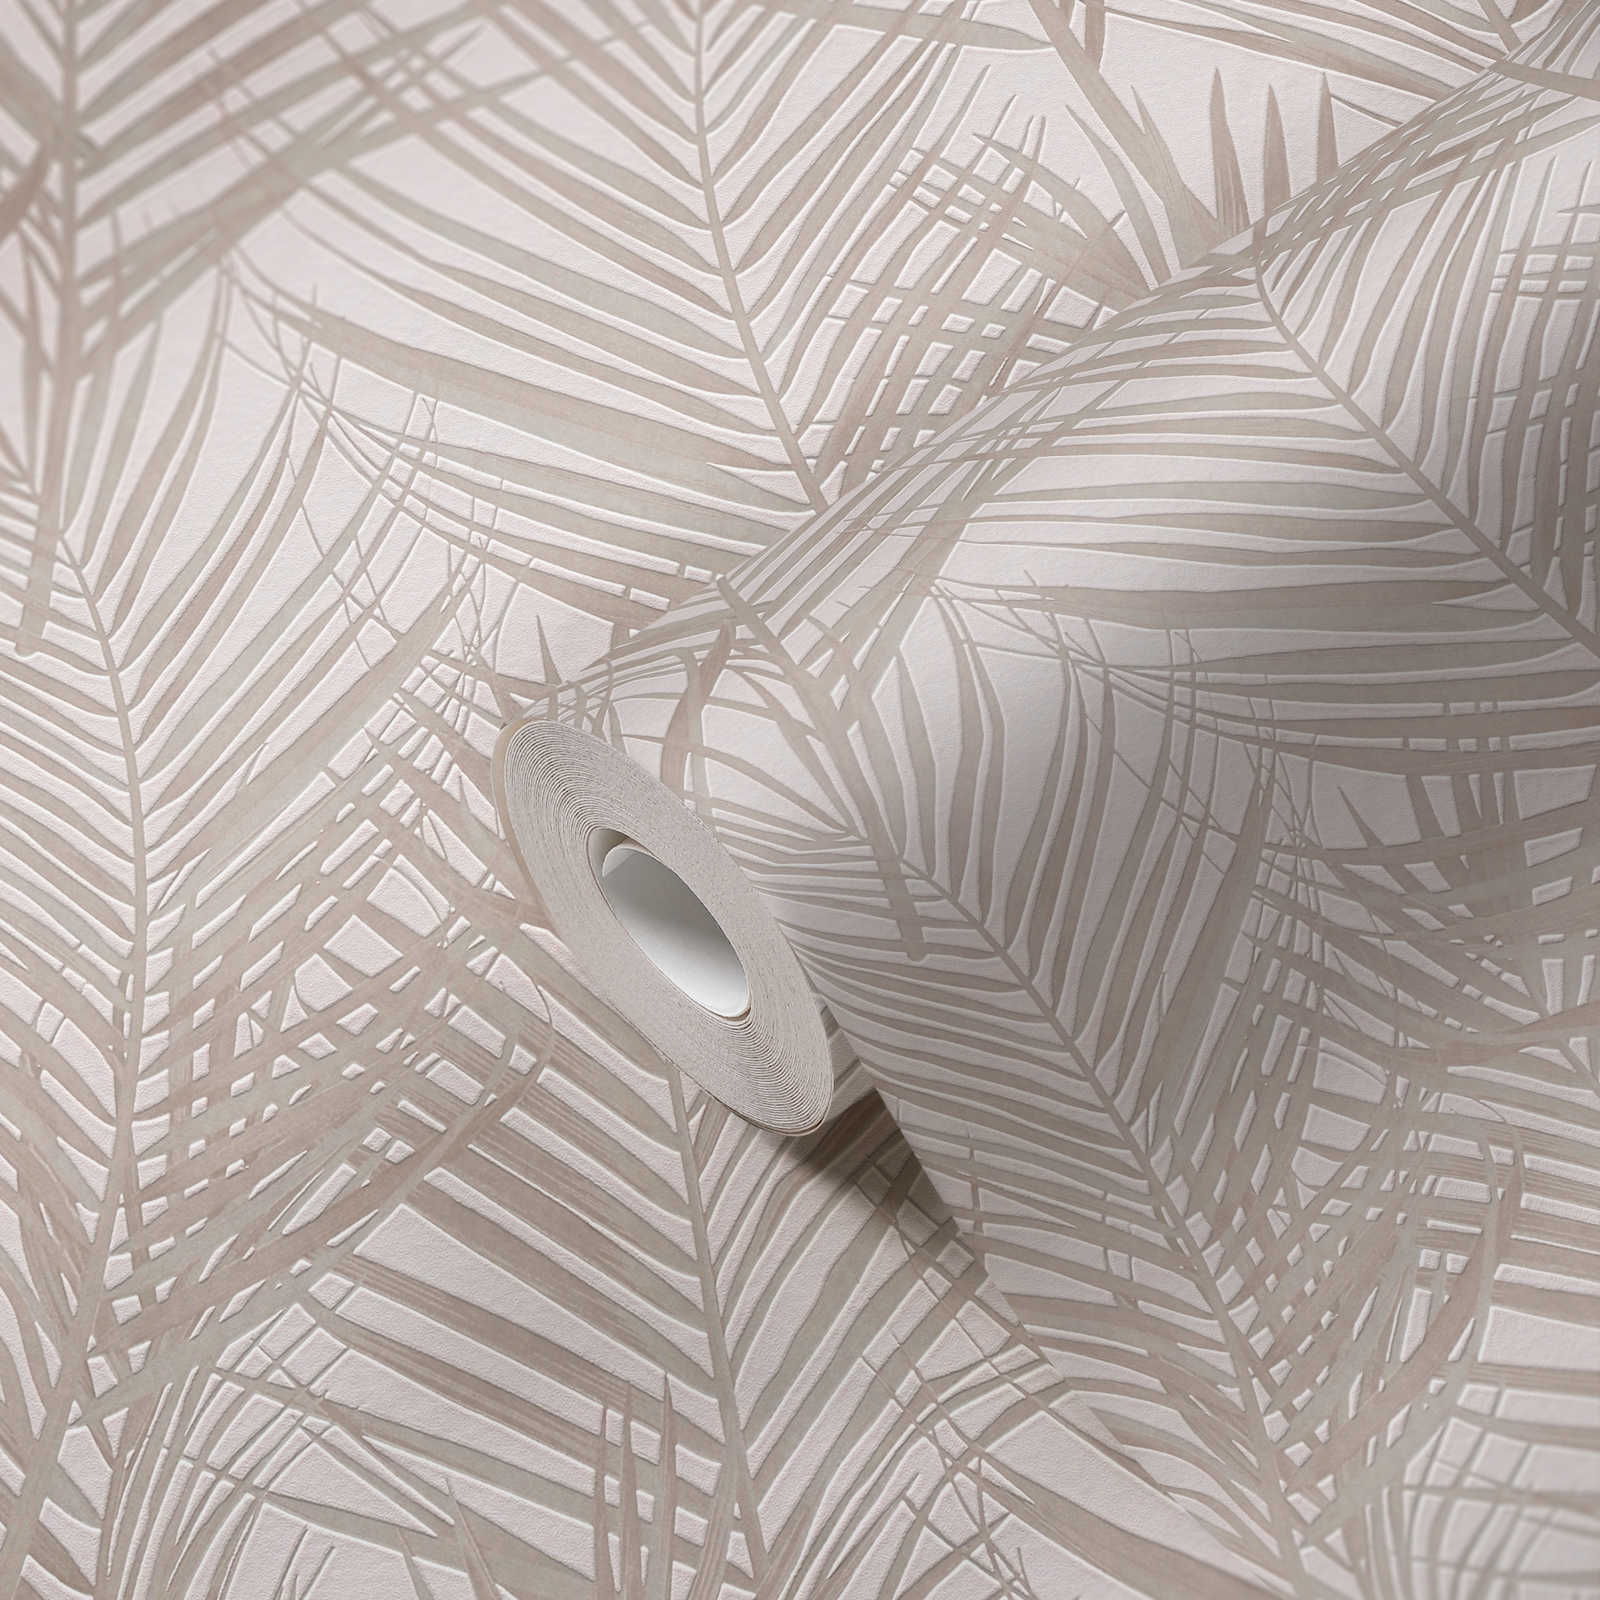             Mustertapete mit Palmenblättern in matt – Weiß, Creme
        